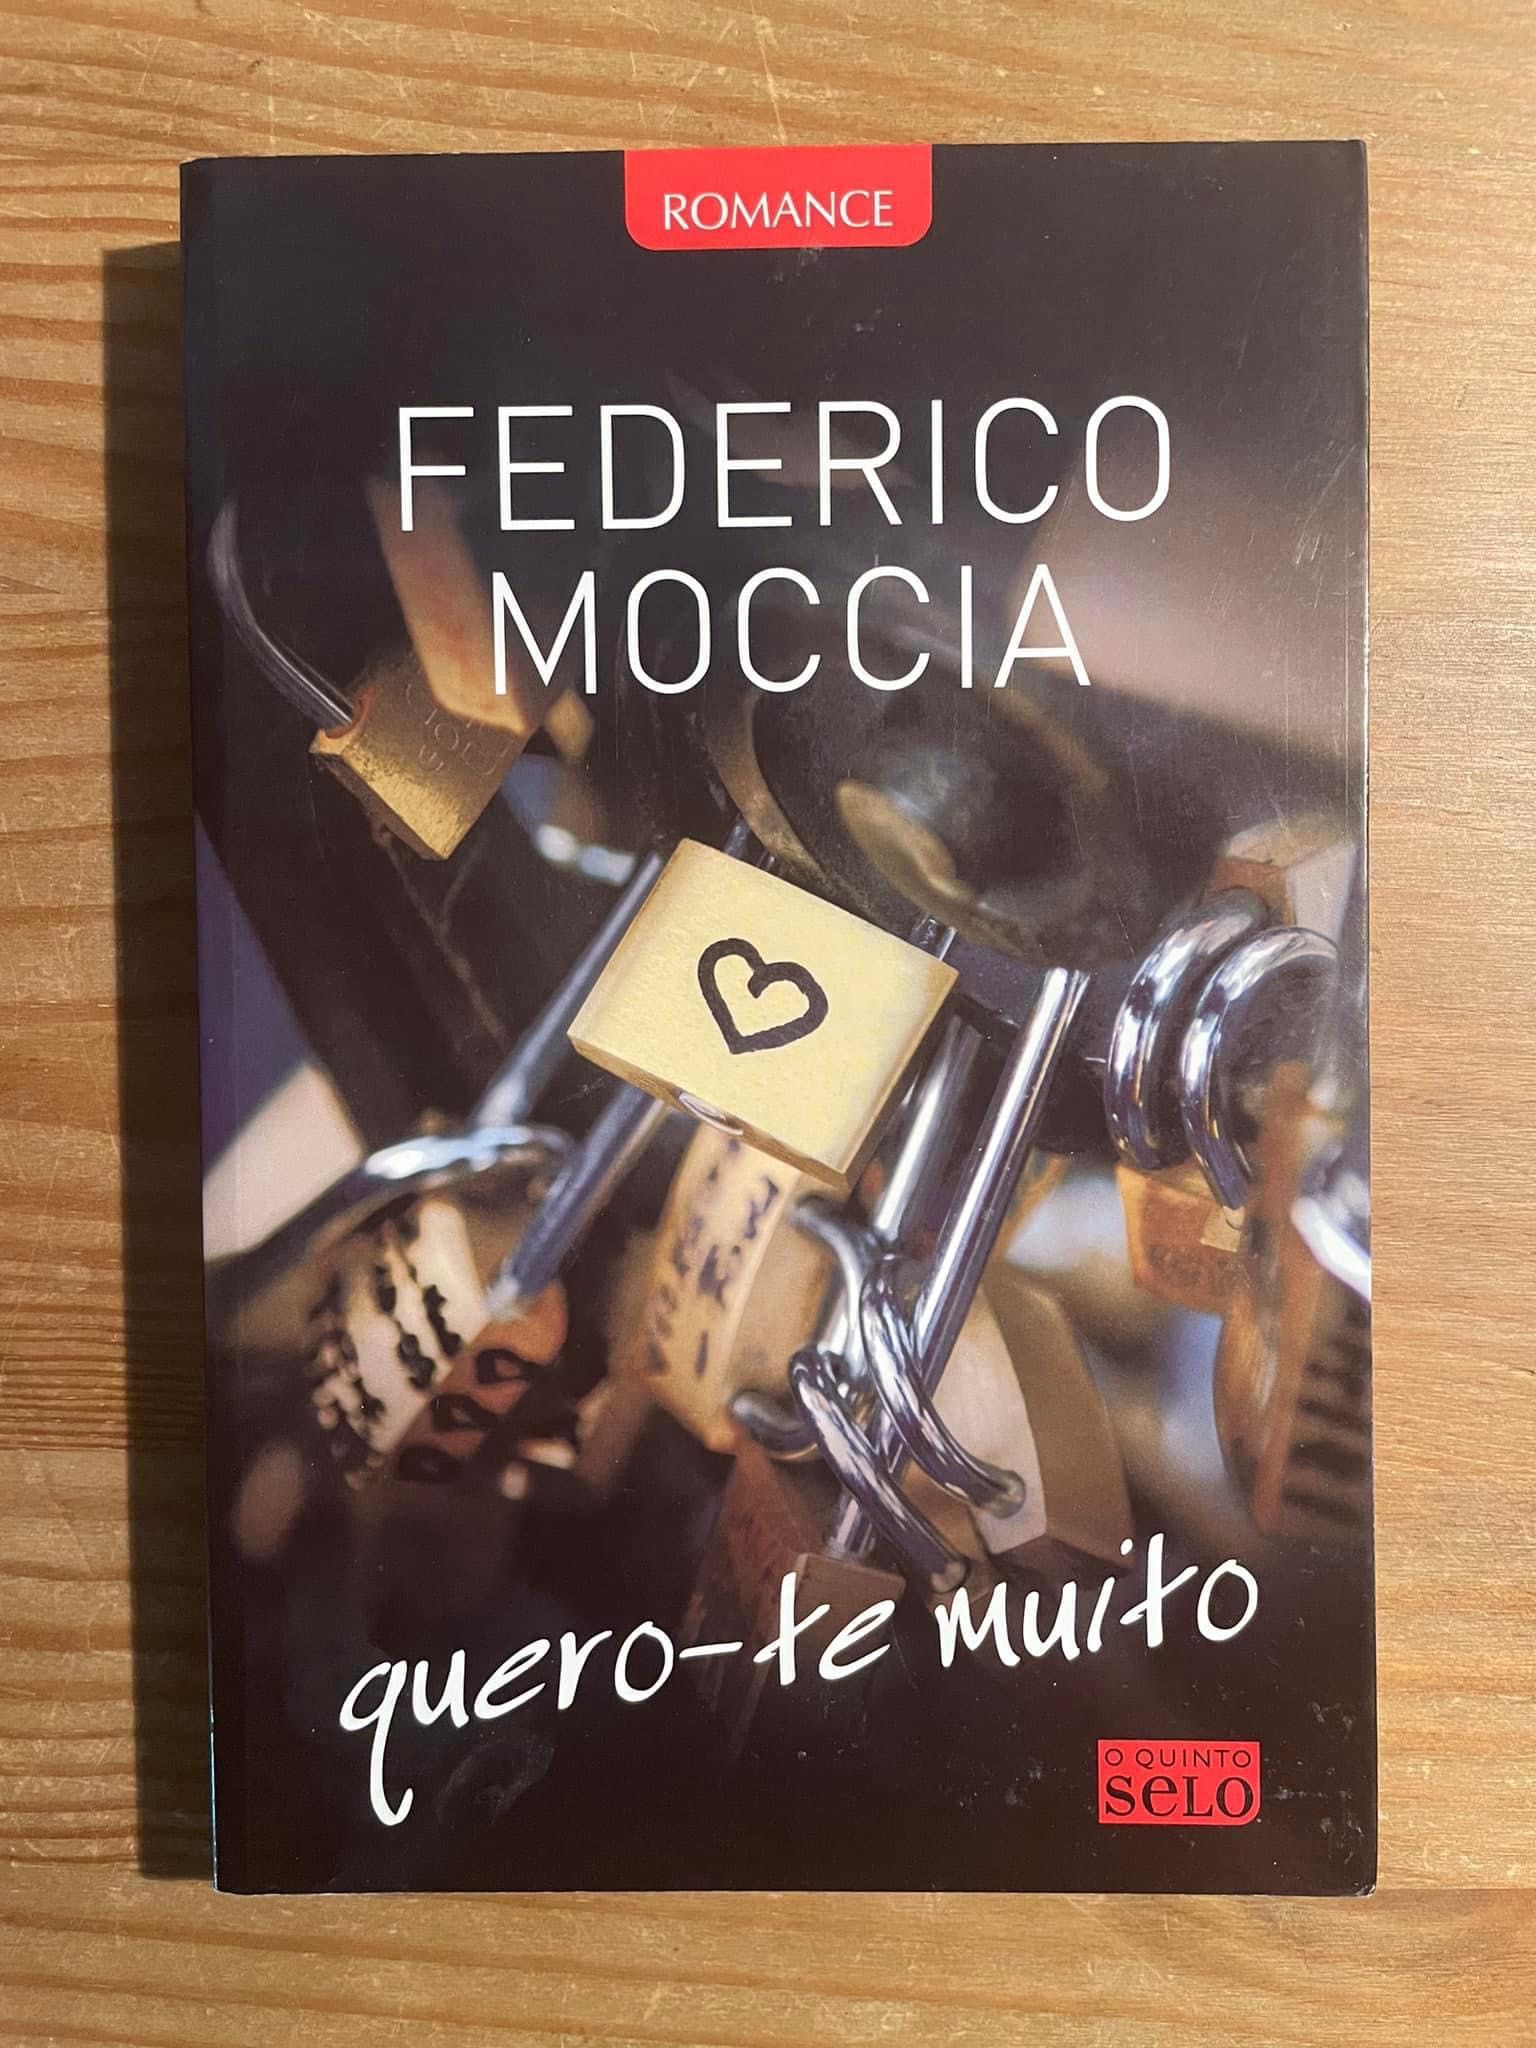 Quero-te Muito - Federico Moccia (portes grátis)